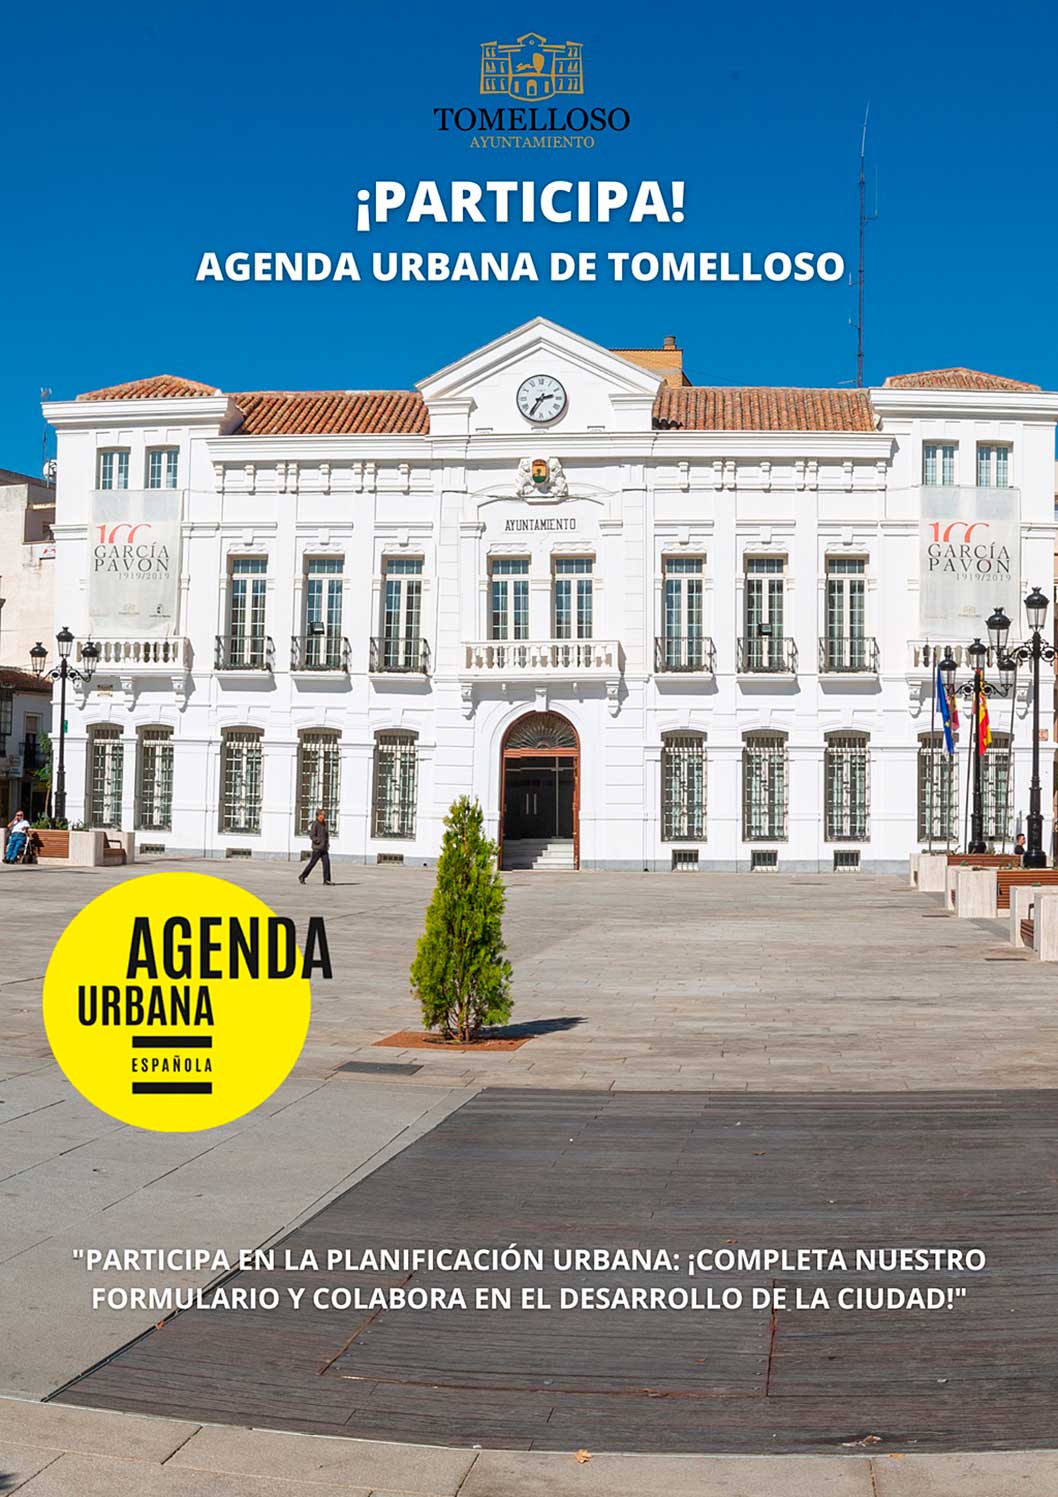 El Ayuntamiento de Tomelloso solicita la participación ciudadana para diseñar la Agenda Urbana de la localidad